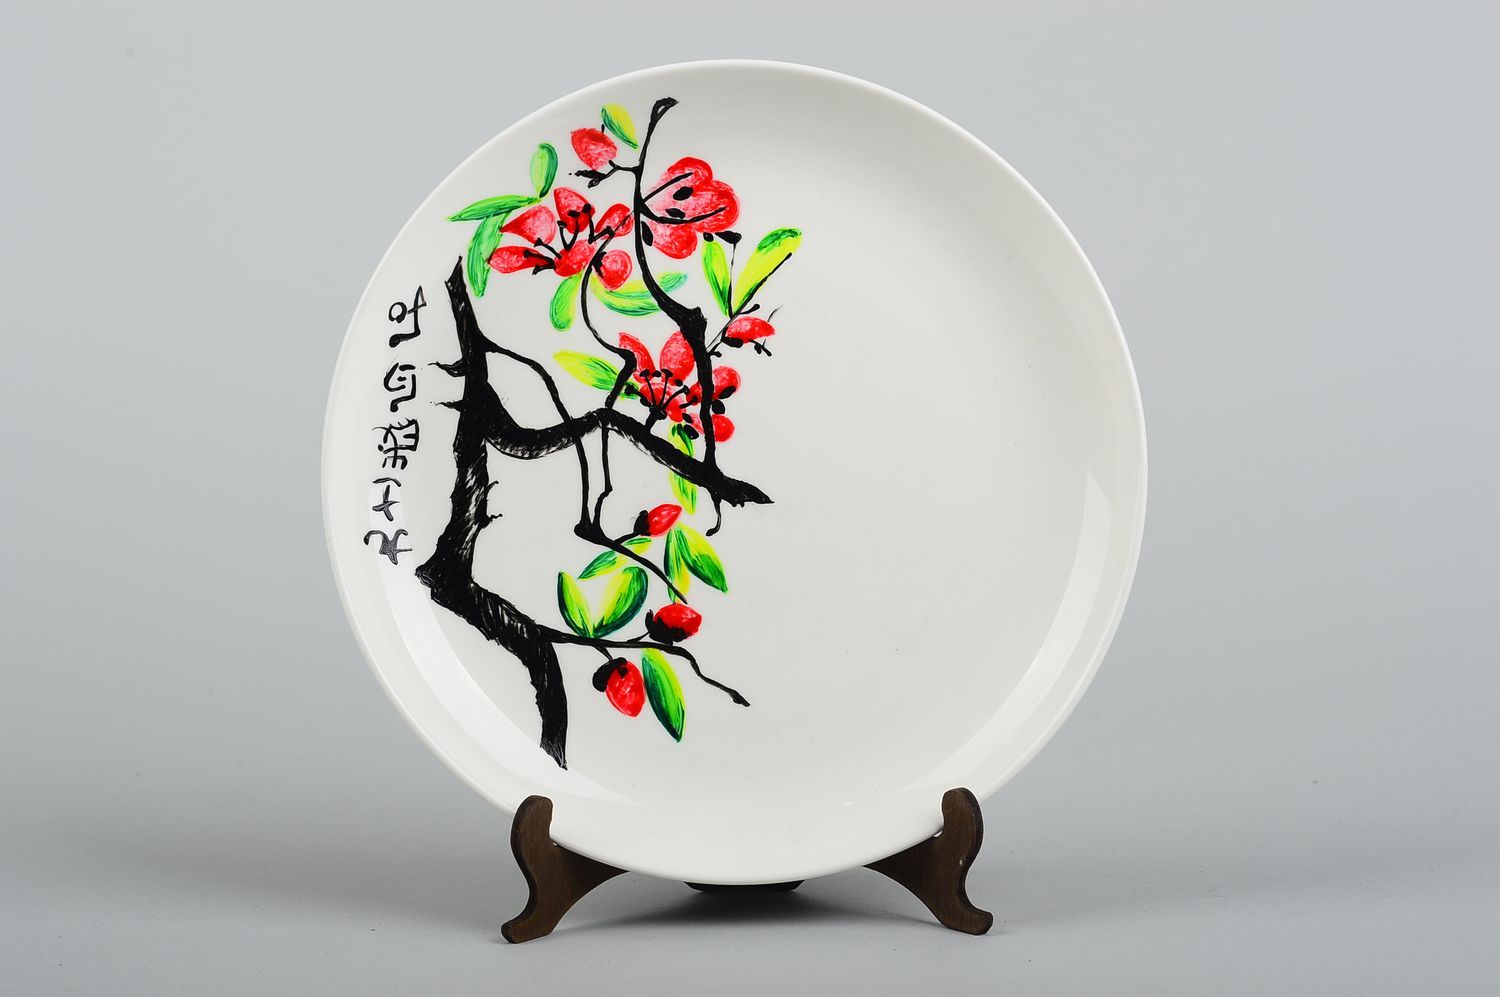 Plato de cerámica artesanal utensilio de cocina pintado menaje del hogar foto 1